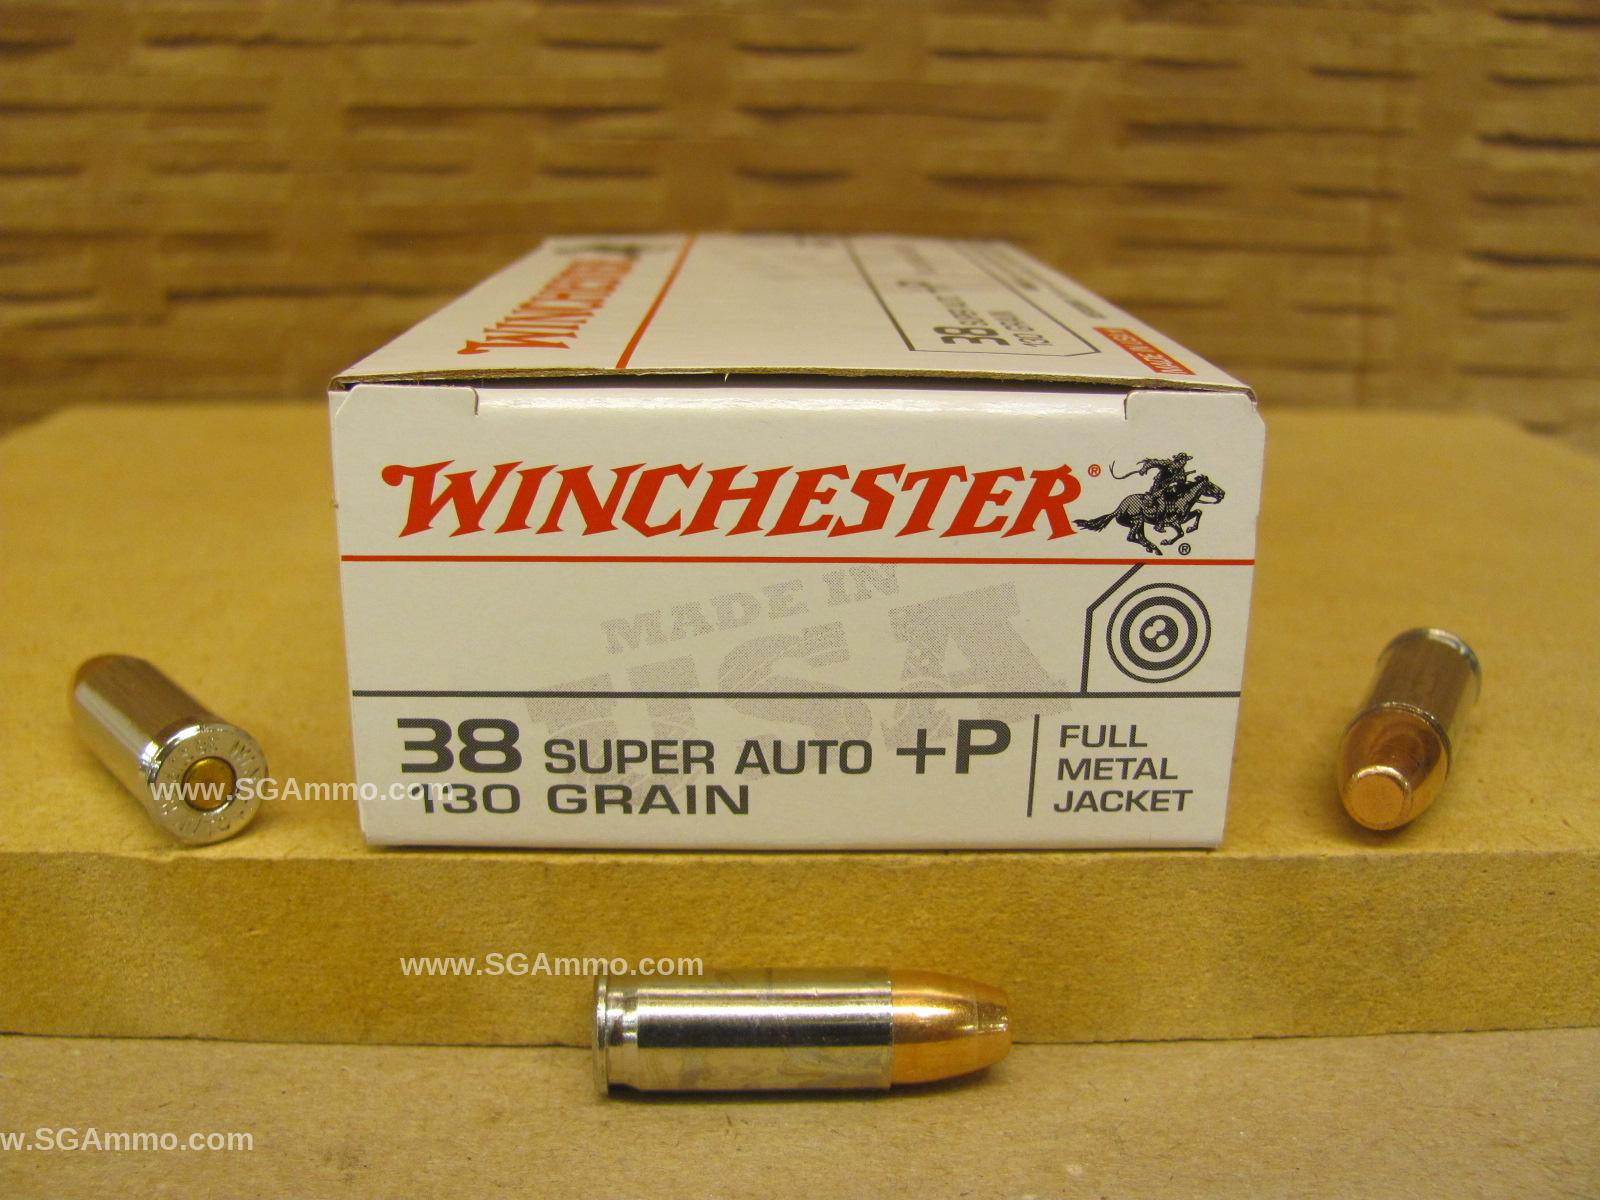 500 Round Case - 38 Super Auto +P Winchester 130 Grain FMJ Ammo - Q4205 - Read Description Warning